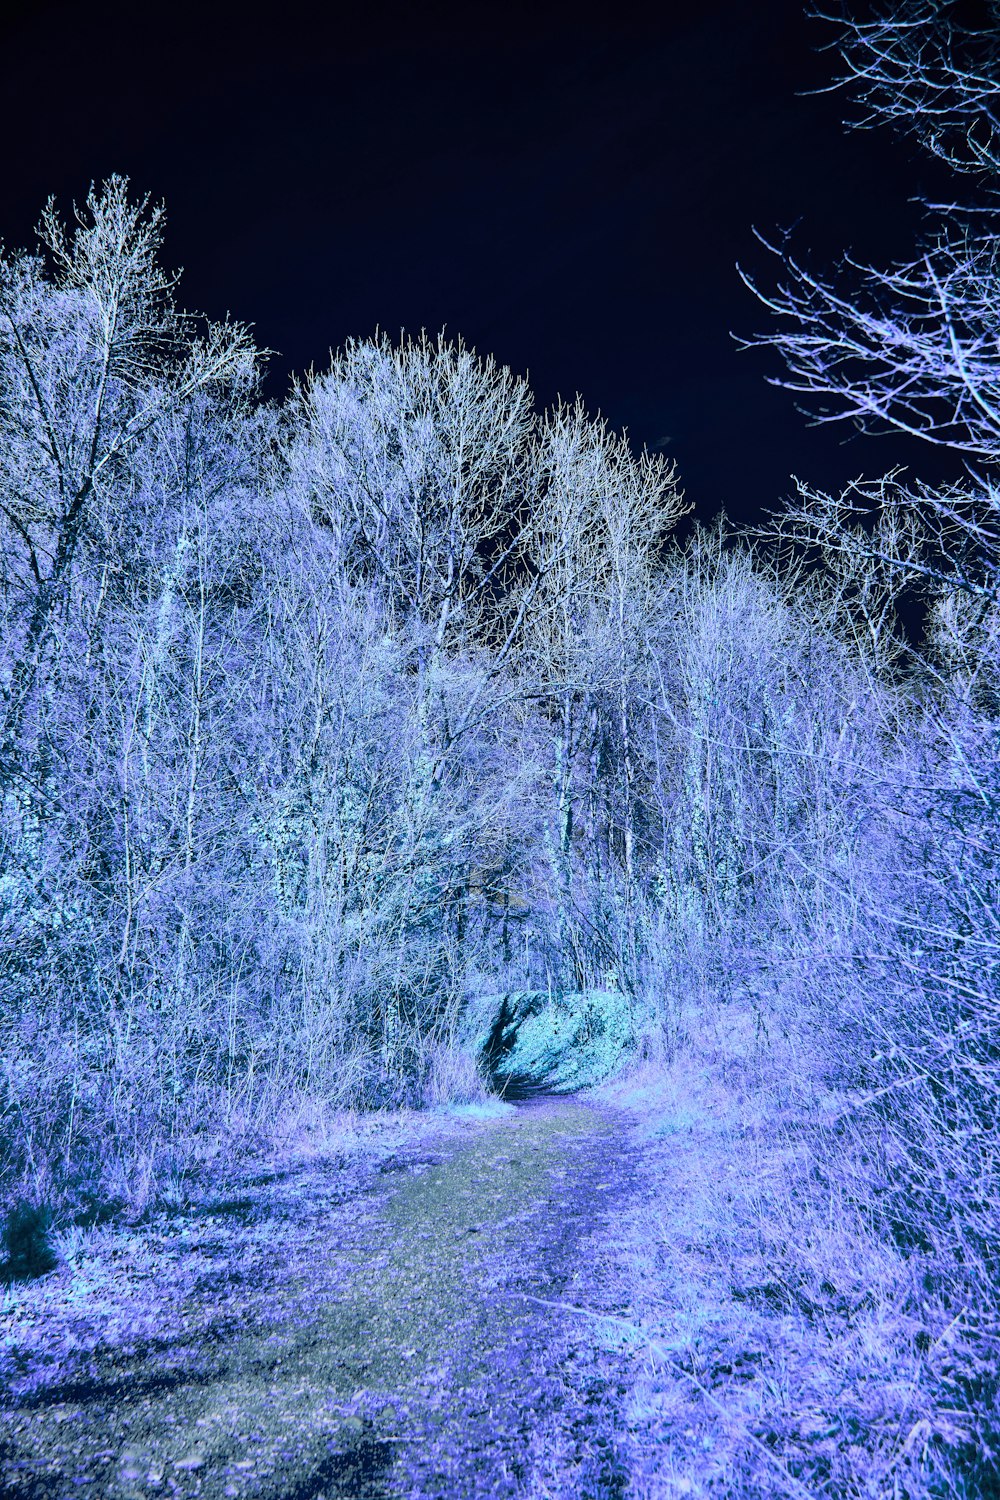 푸른 불빛으로 빛나는 숲속의 길